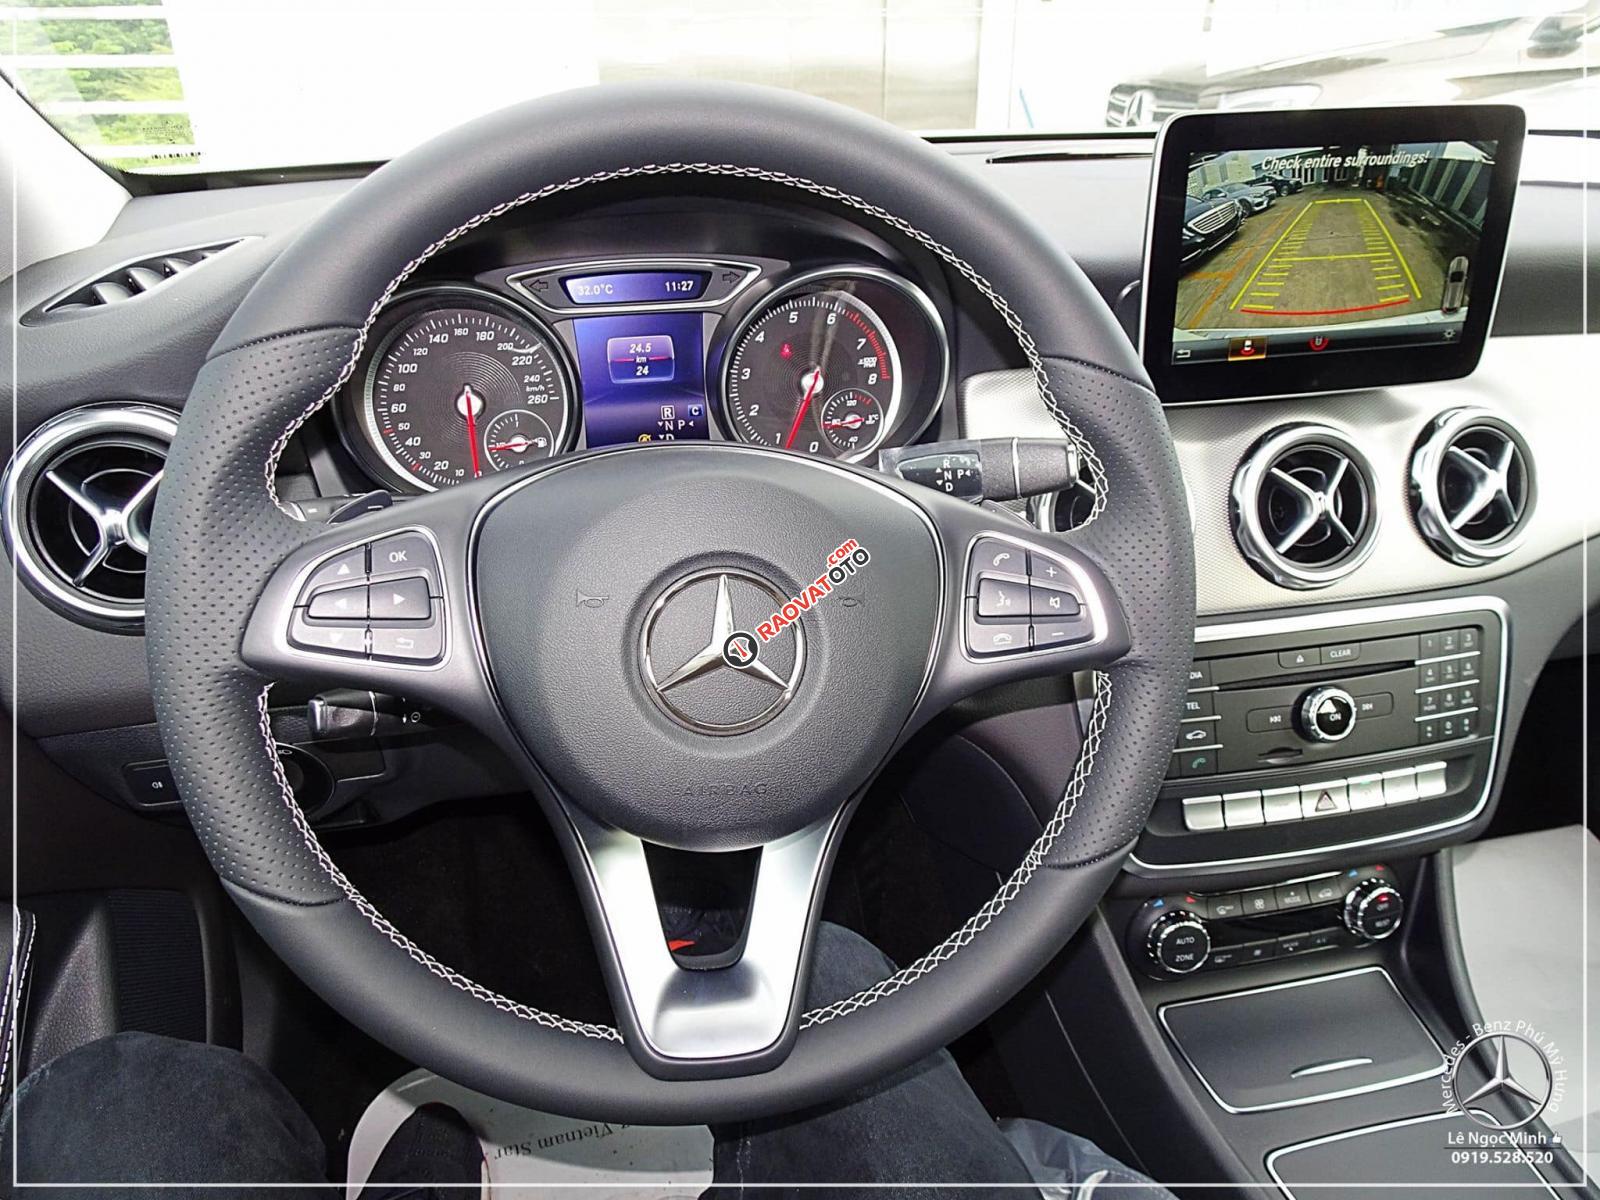 Bán Mercedes GLA 200 new - SUV 5 chỗ nhập khẩu - hỗ trợ ngân hàng 80%, xe giao ngay, LH 0919 528 520-4